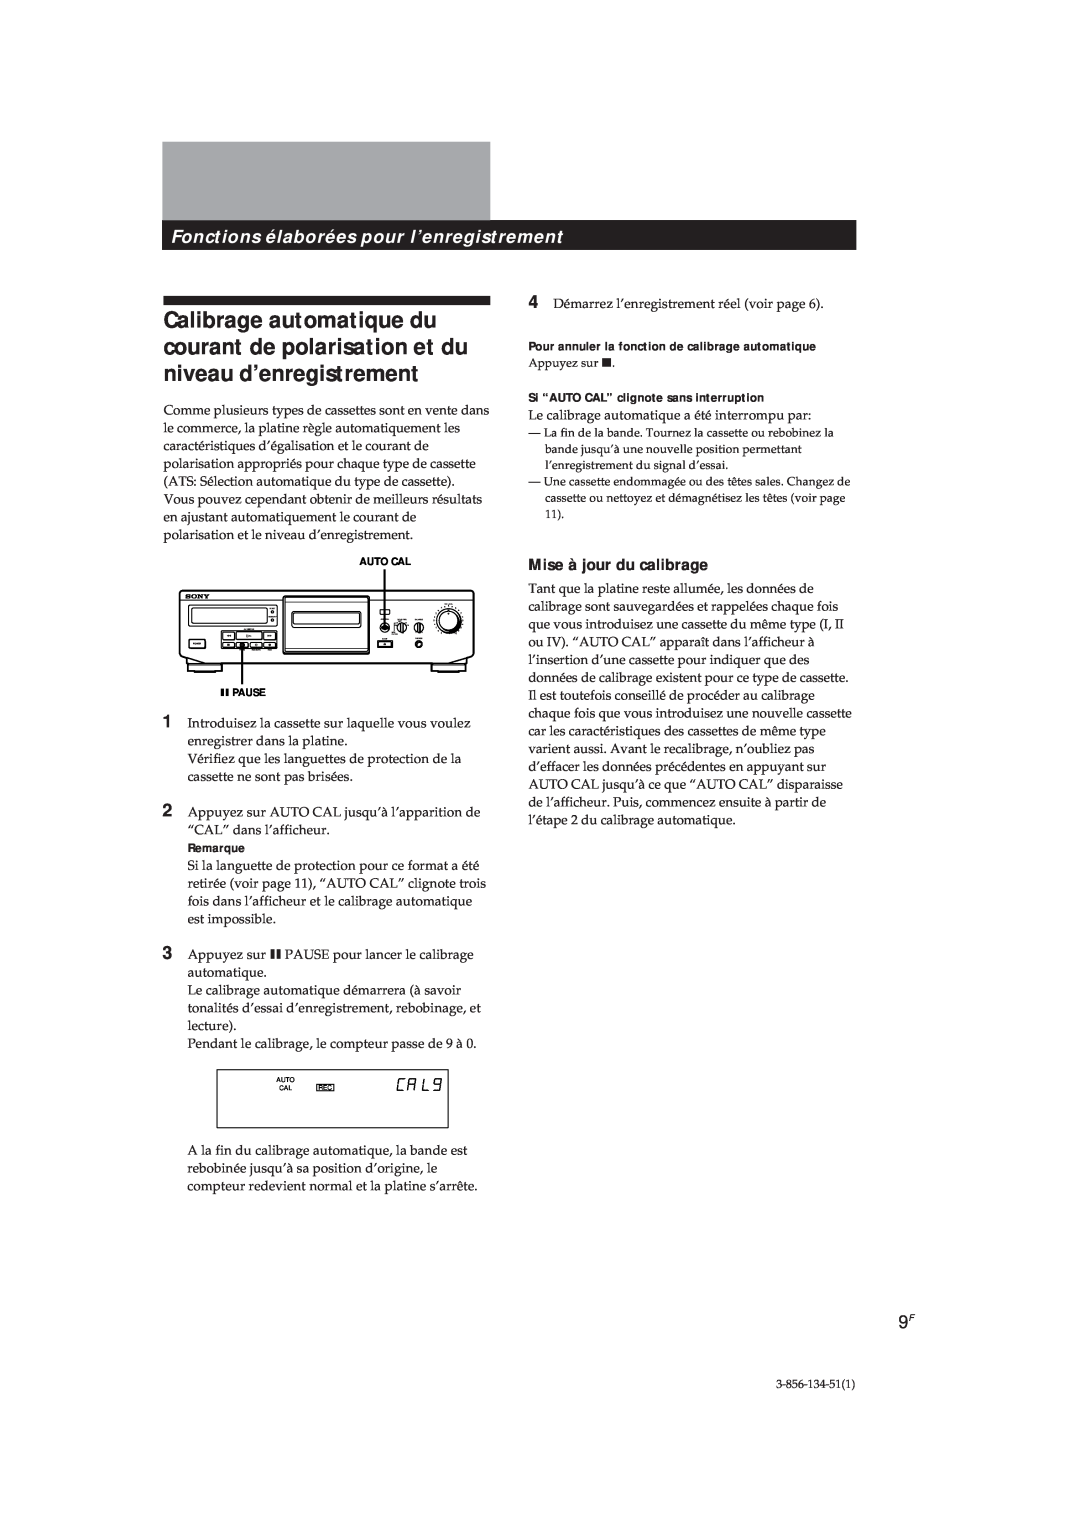 Sony TC-KE300 operating instructions Fonctions élaborées pour l’enregistrement, Mise à jour du calibrage, Remarque 